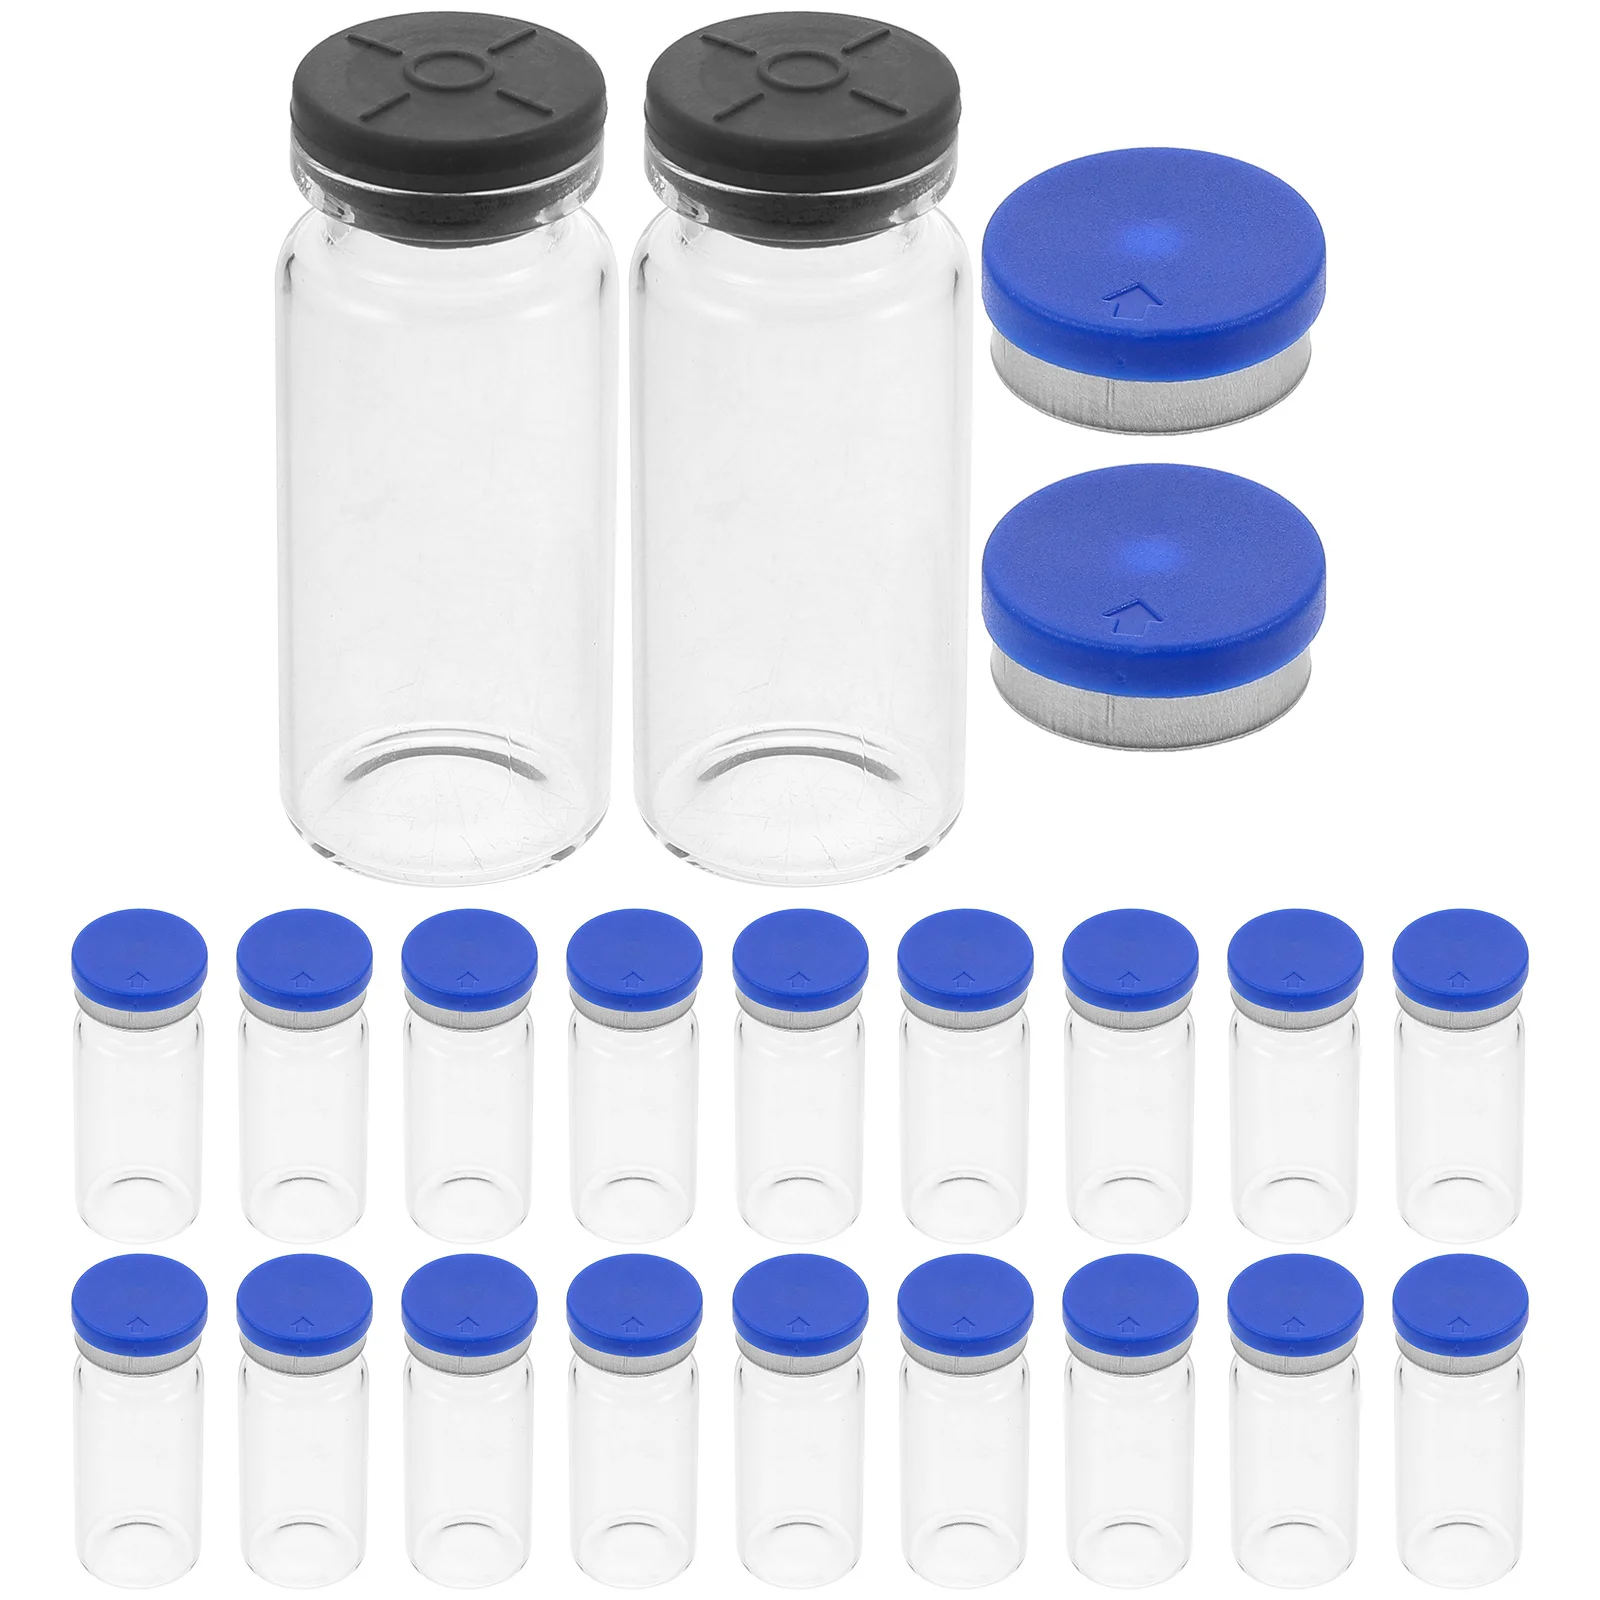 Стеклянные Мини-Флаконы для воды 20 Упаковок по 10 мл Прозрачные Колпачки для пробников с плоским Дном Лабораторный химический Флакон для образцов Прозрачный